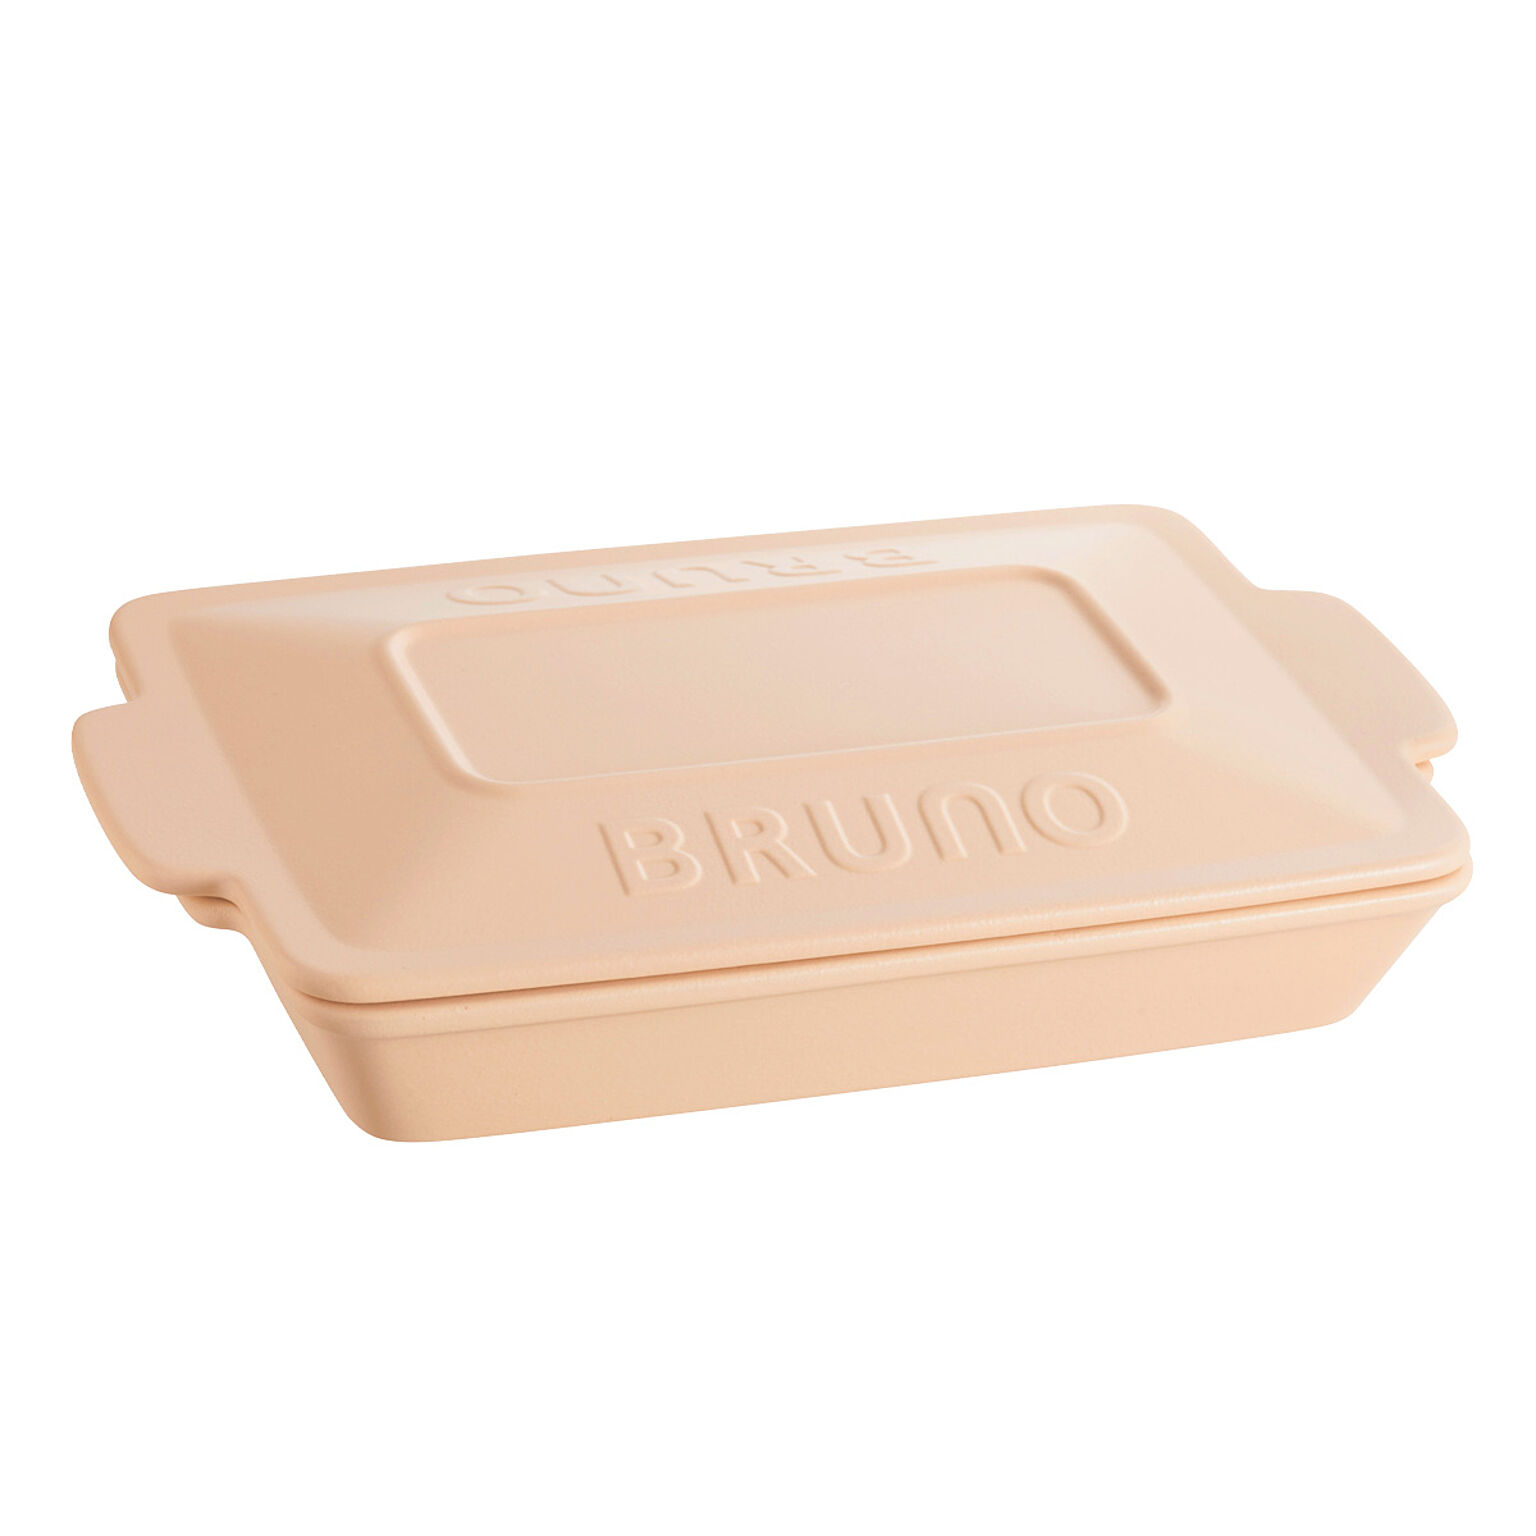 ブルーノ BRUNO グリルパン BHK279 グリラー セラミックグリルパン 蓋付き耐熱皿 耐熱陶器 オーブン グリル 冷凍 食洗器対応 キッチン雑貨 調理器具